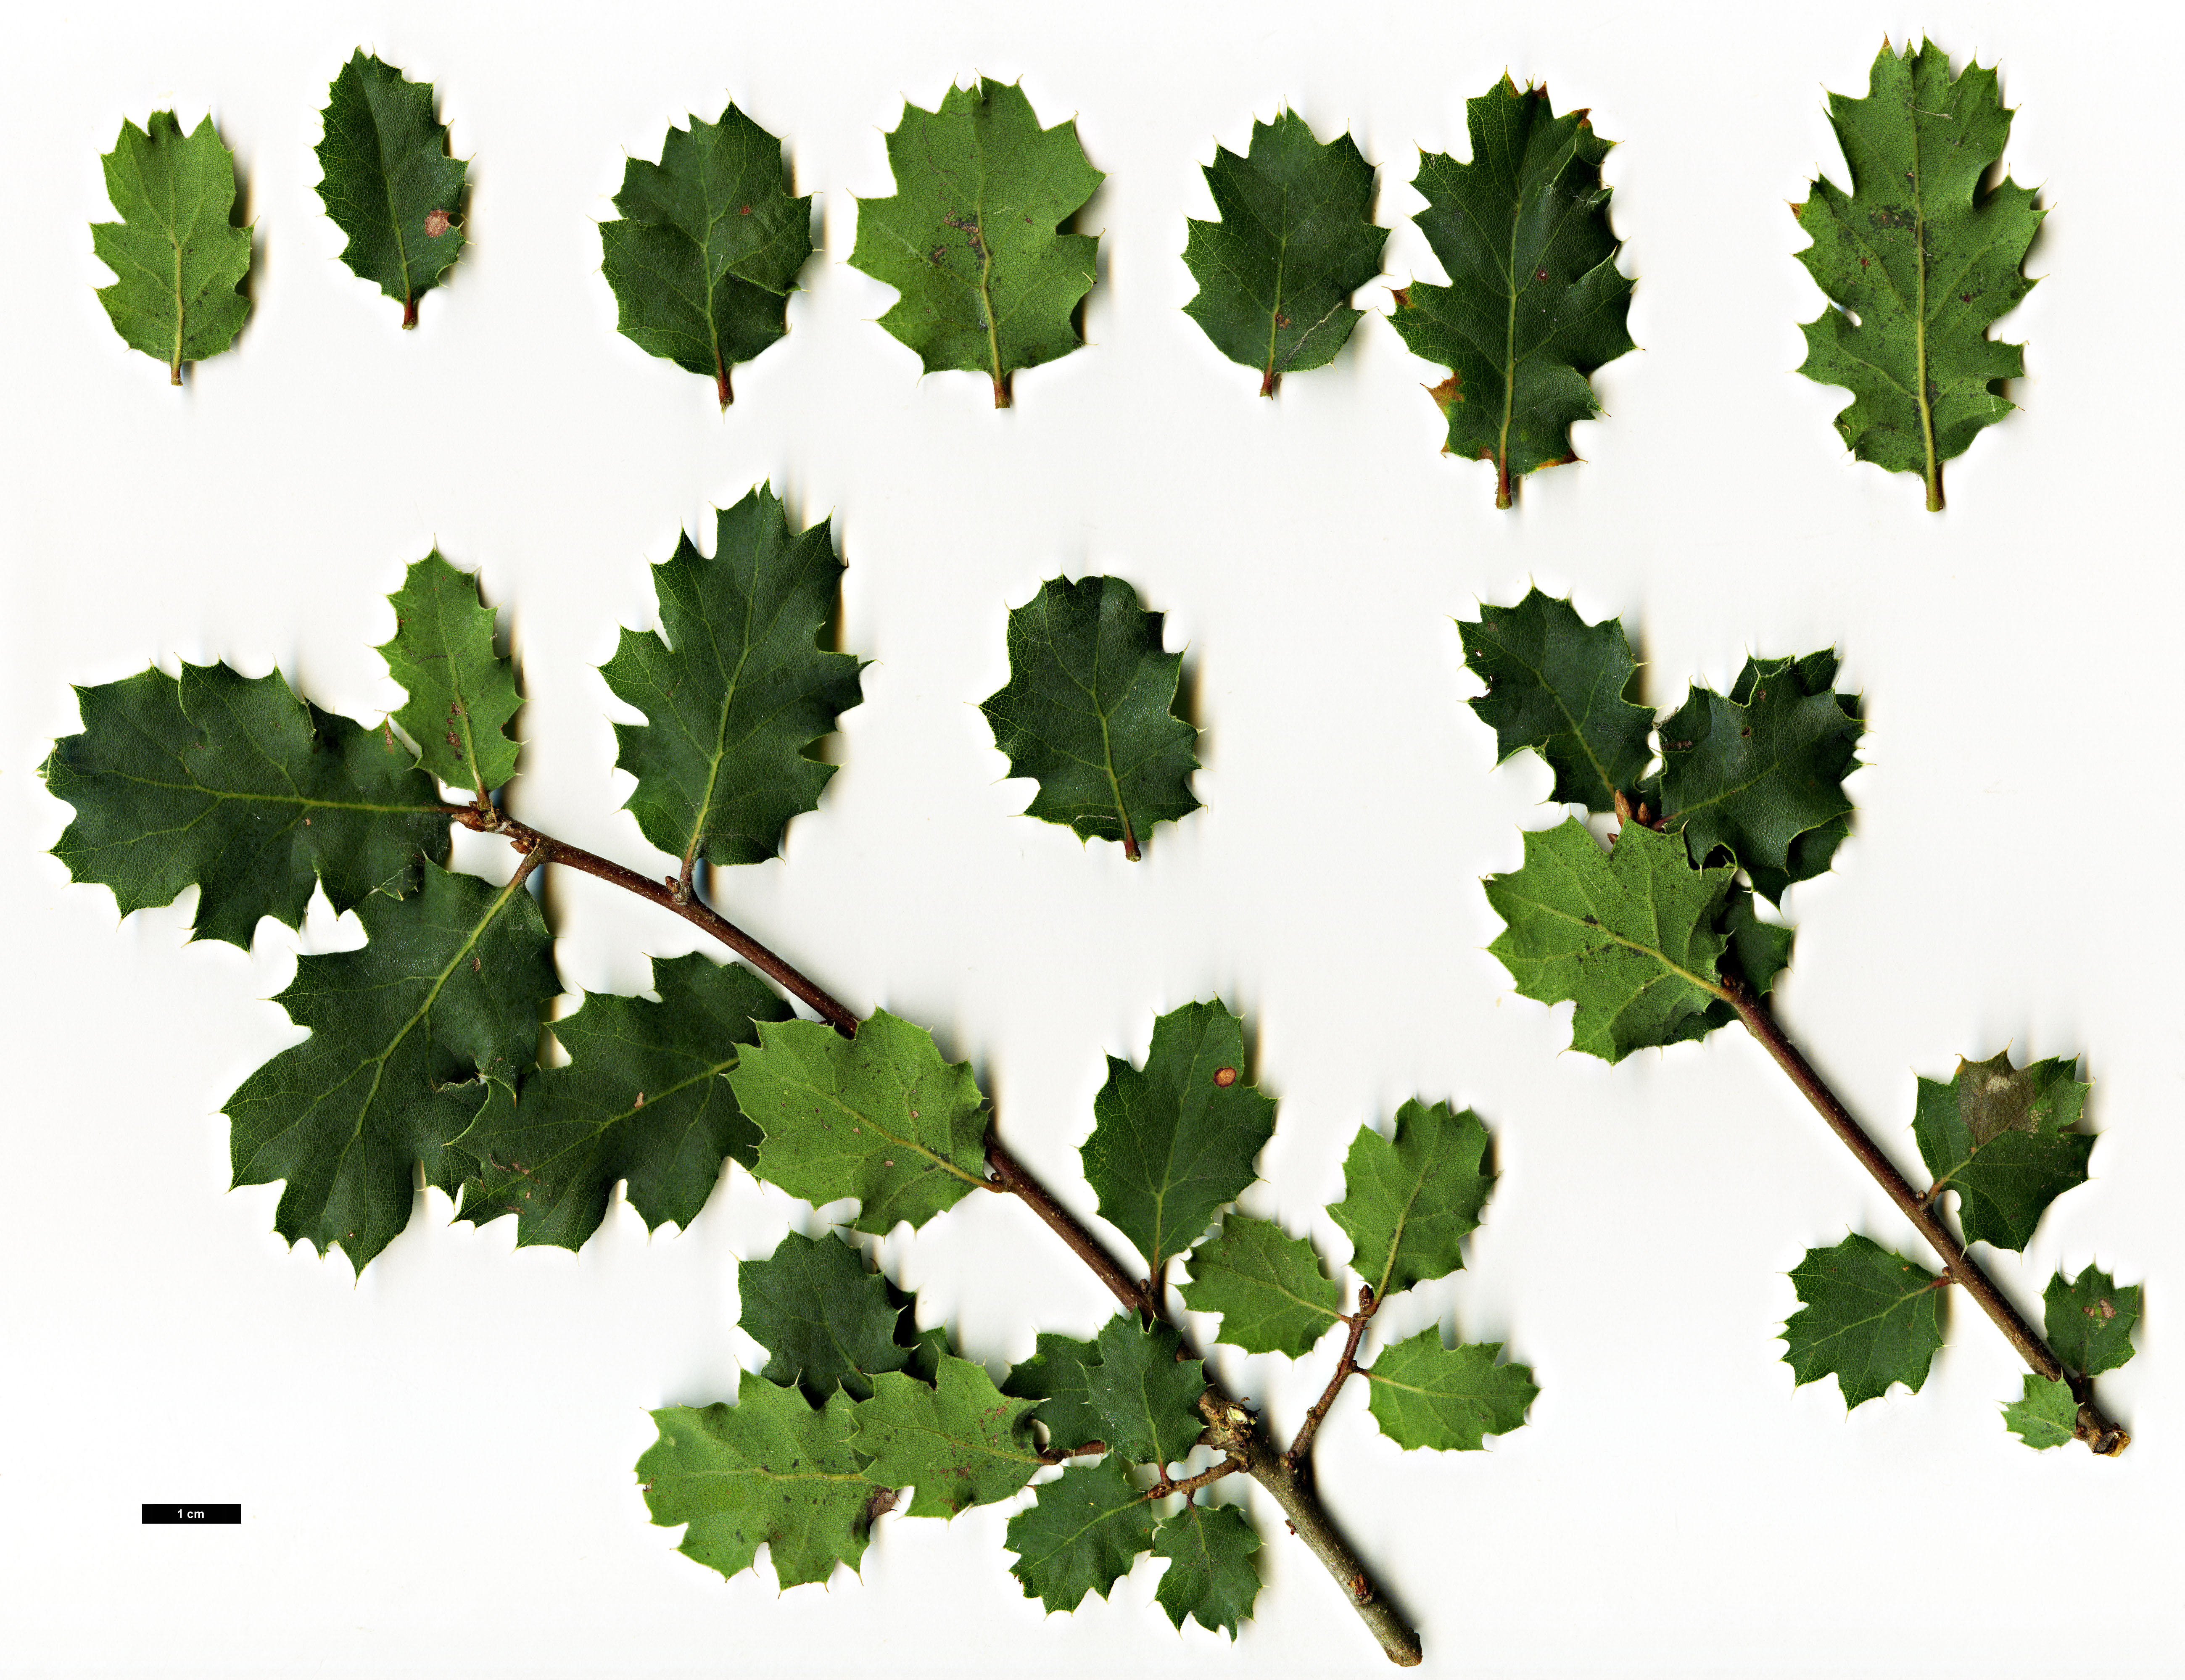 High resolution image: Family: Fagaceae - Genus: Quercus - Taxon: ×alvordiana (Q.douglasii × Q.john-tuckeri)